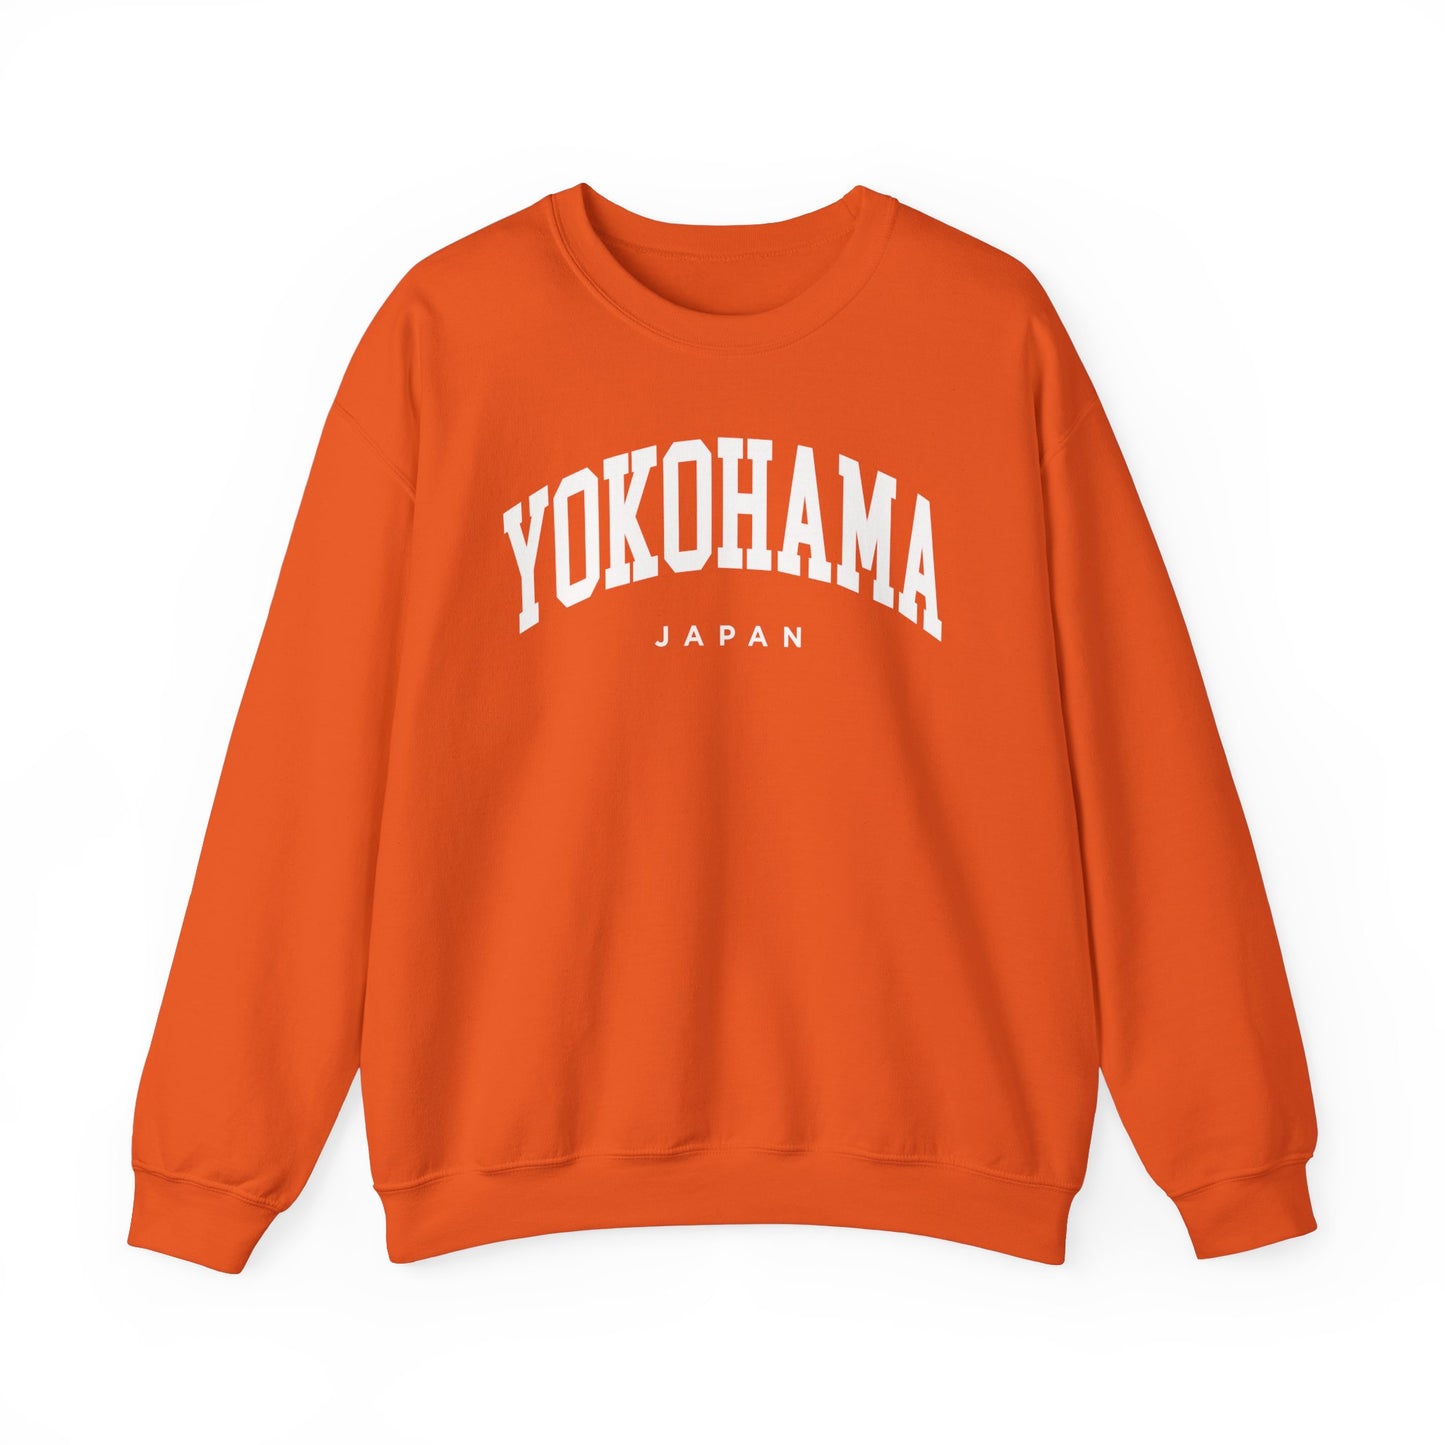 Yokohama Japan Sweatshirt